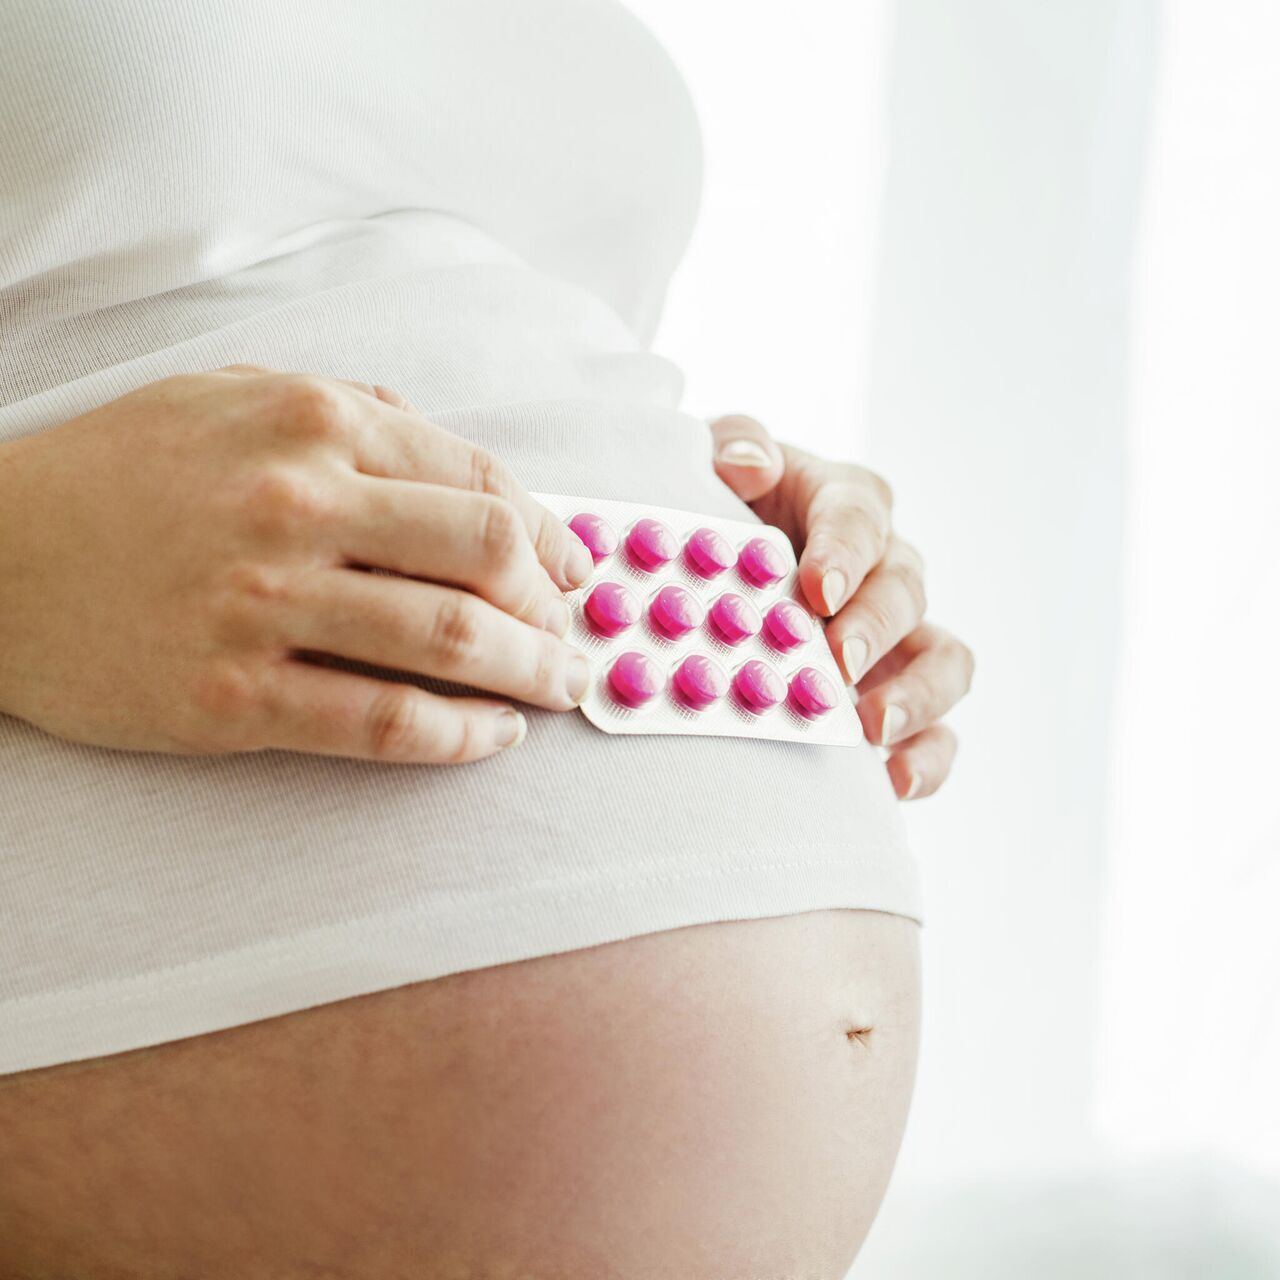 Убрать живот после родов в домашних условиях: упражнения для подтяжки,  похудения